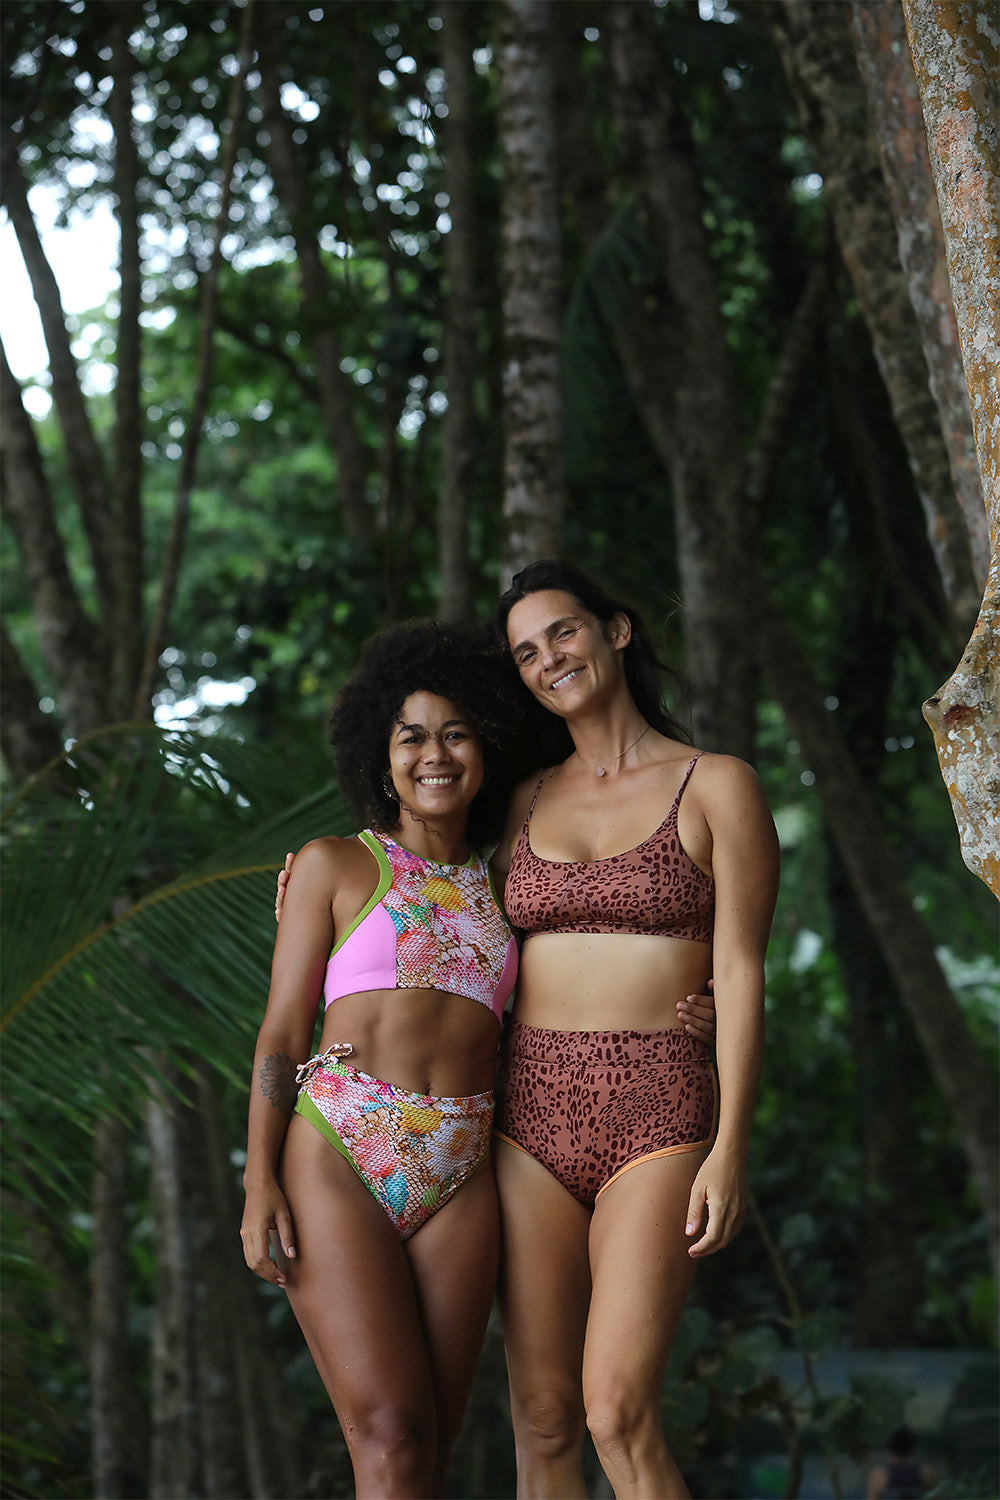 Dkoko Sustainable Surf Bikinis, Swimwear & Beachwear from Costa Rica